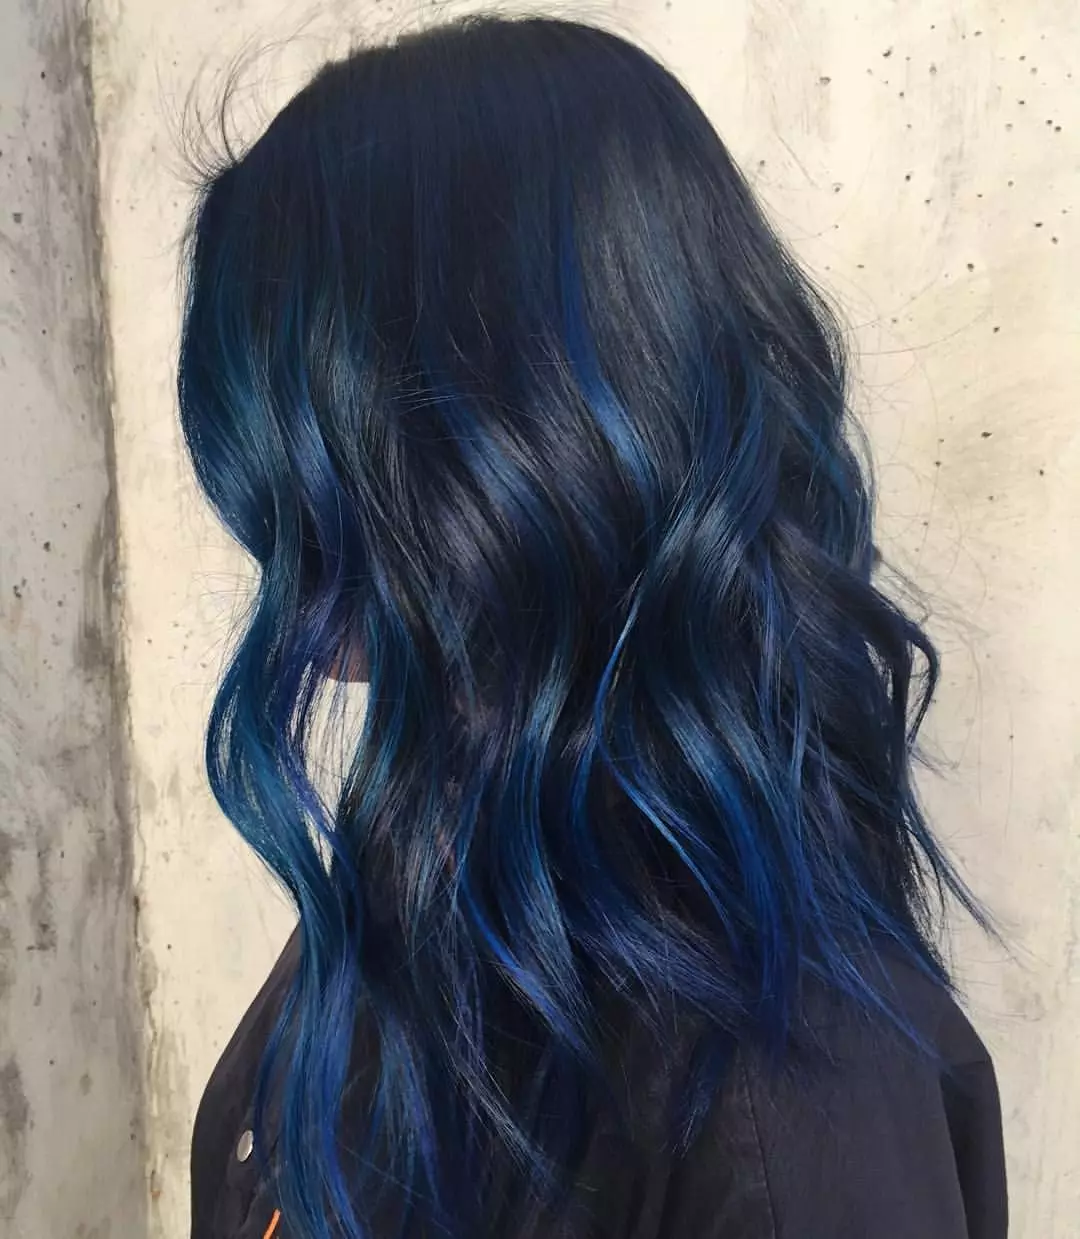 رنگ مو آبی: مرور کلی رنگ های مقاوم در برابر رنگ با سوزن آبی، از آبی روشن به سایه های سیاه و سفید 5402_50